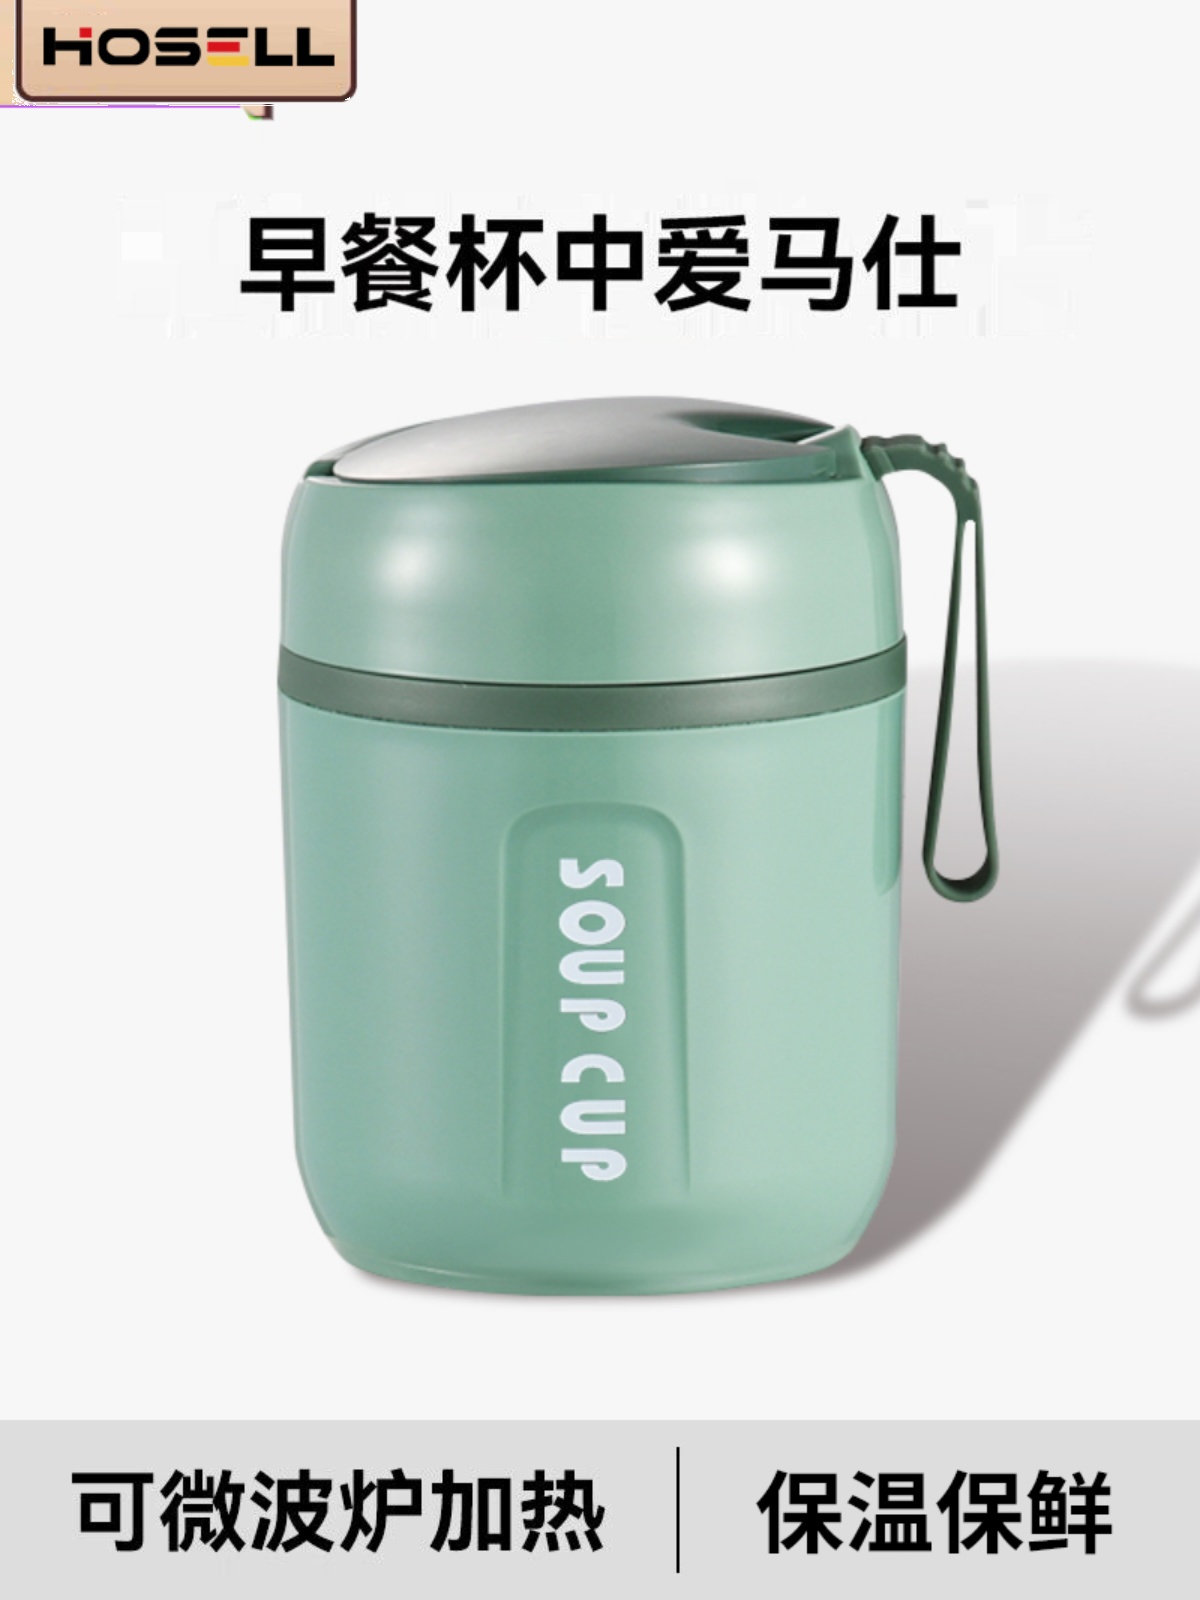 時尚中式保溫便當盒 迷你便攜湯杯碗盒裝粥杯 (5.6折)